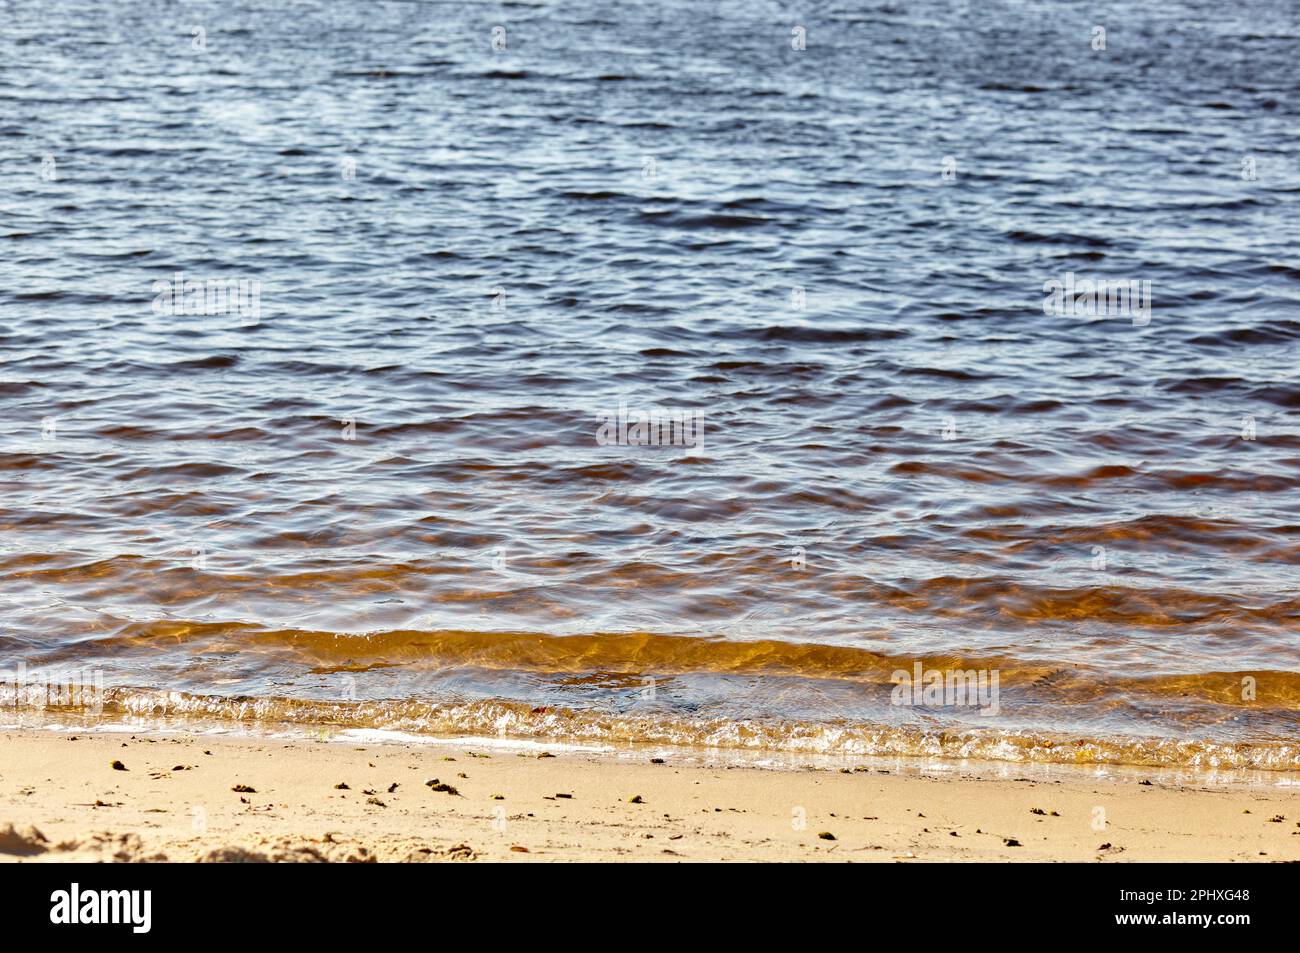 Bord de l'eau sur la rive. Vague de mer bleue sur une plage de sable. Magnifique fond avec des jets d'eau sur la plage Banque D'Images